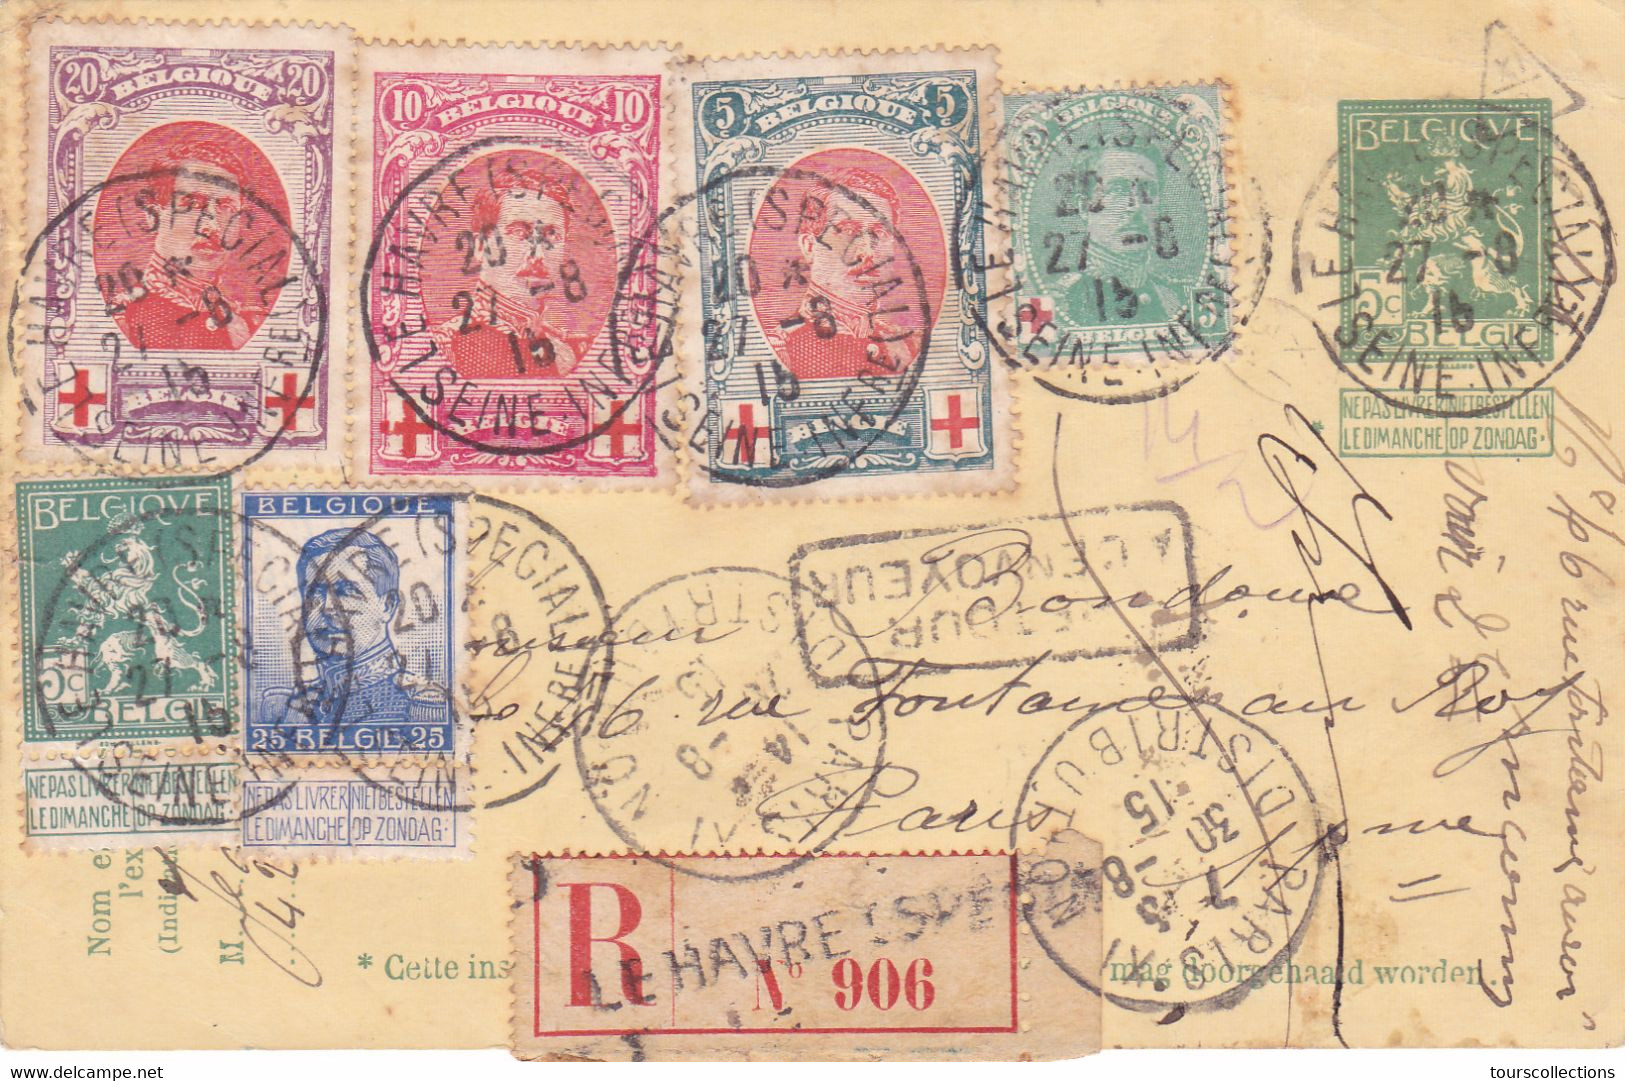 BELGIQUE ENTIERS POSTAUX - Entier Postal 27 Aout 1915 - WW1 - Gouvernement Belge Replié à LE HAVRE (76) Guerre 1914 1918 - Abarten